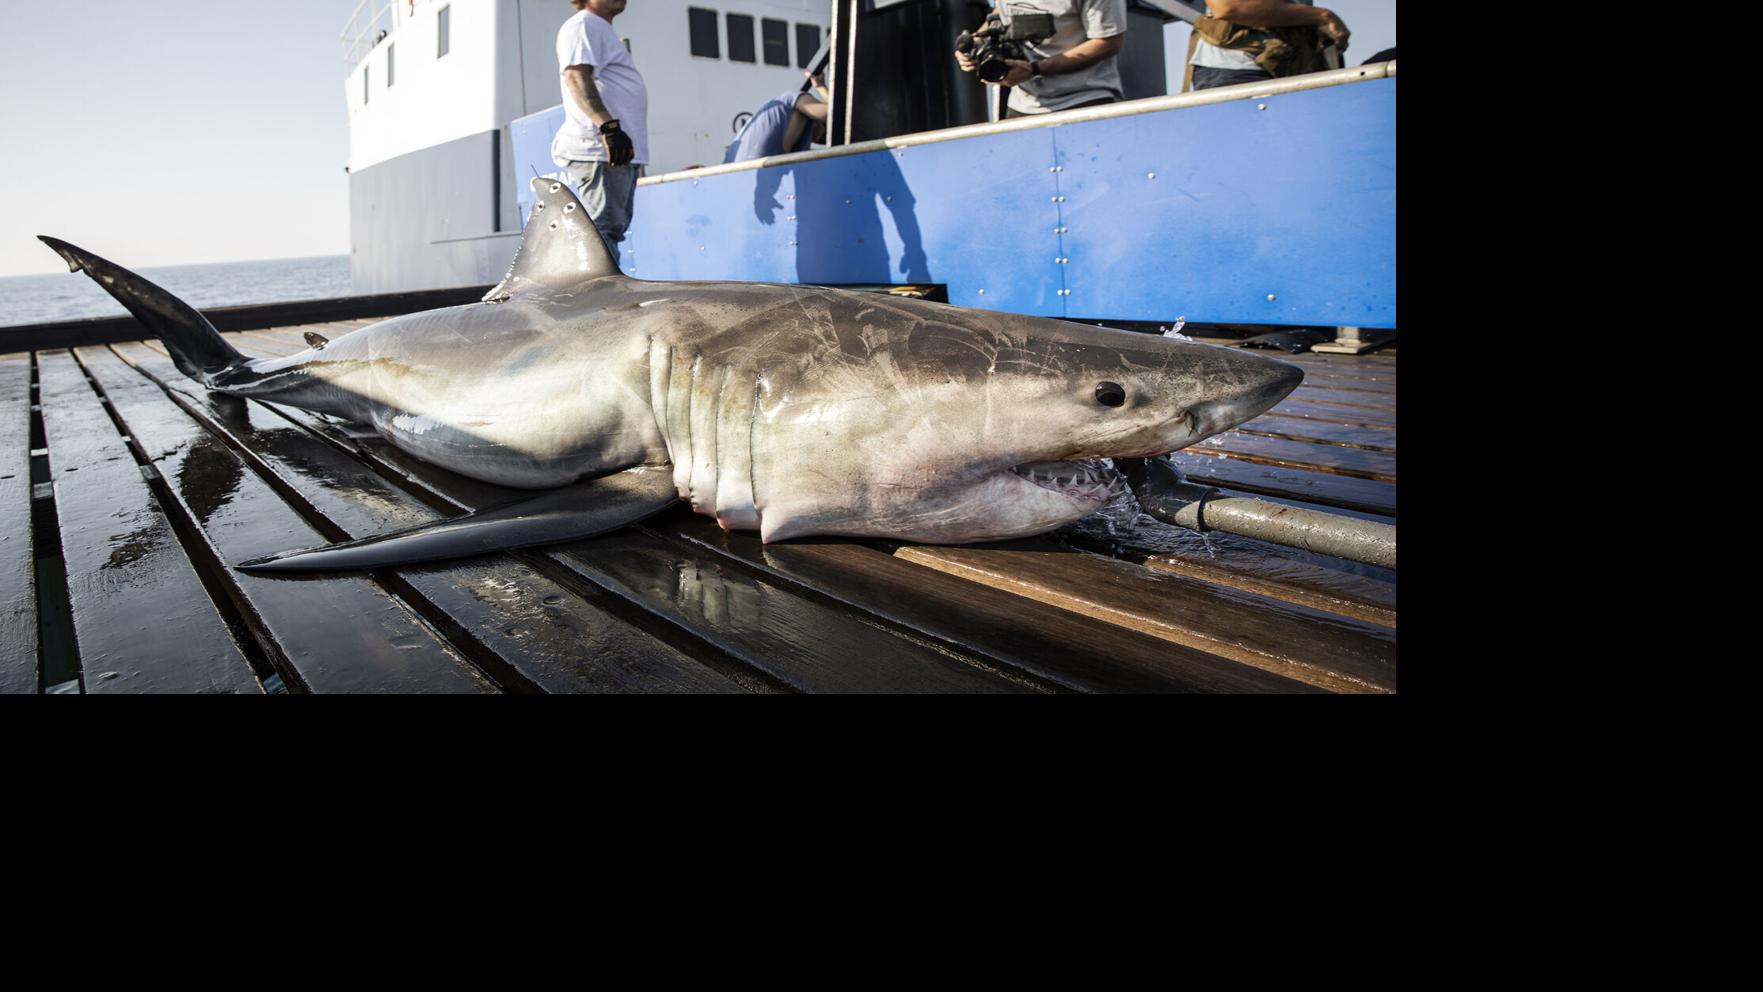 8 North Carolina Beaches with the Most Shark Attacks - AZ Animals